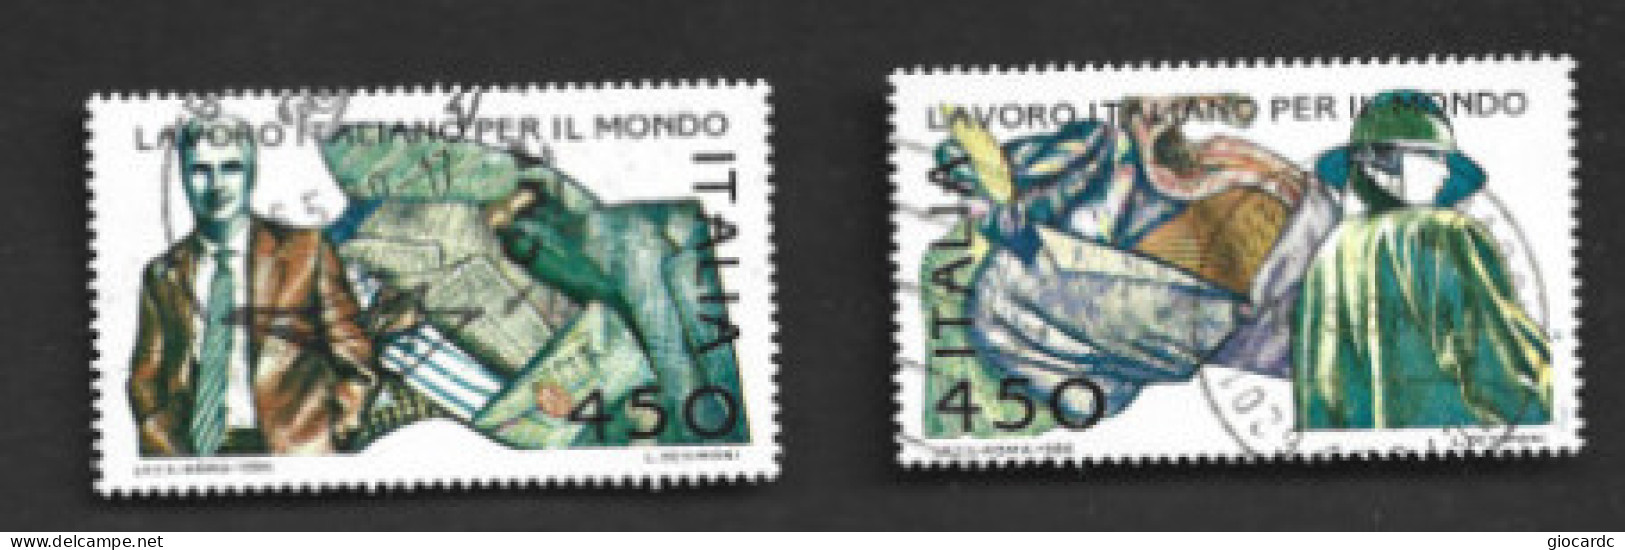 ITALIA REPUBBLICA  - SA 1776.1767  - 1986  LAVORO ITALIANO: MODA  (COMPLET SET OF 2)  -  USATO  -  RIF. 30813 - 1981-90: Used